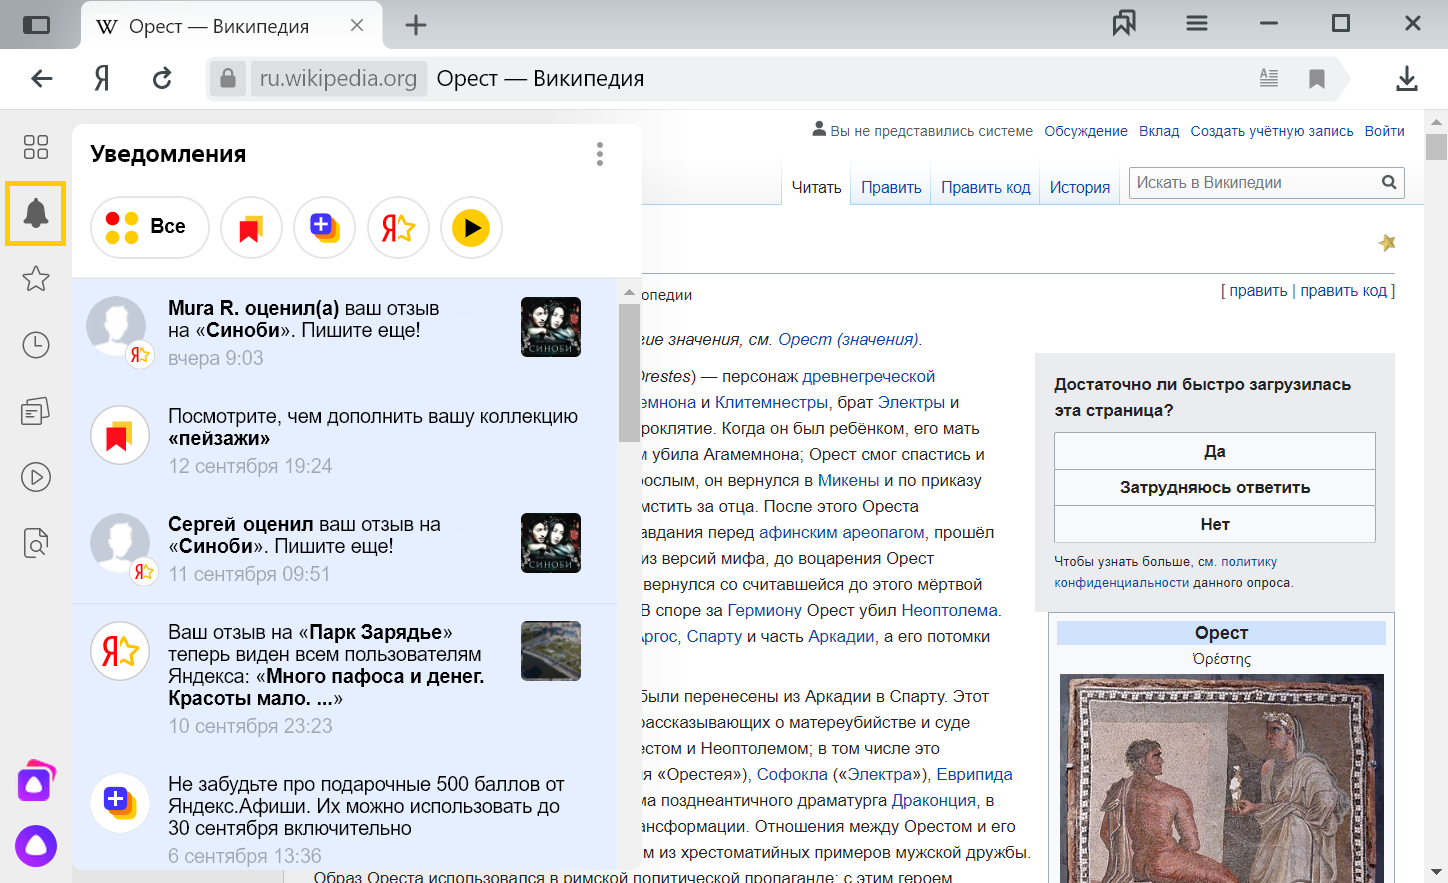 Как убрать и включить уведомления в Яндекс браузере?